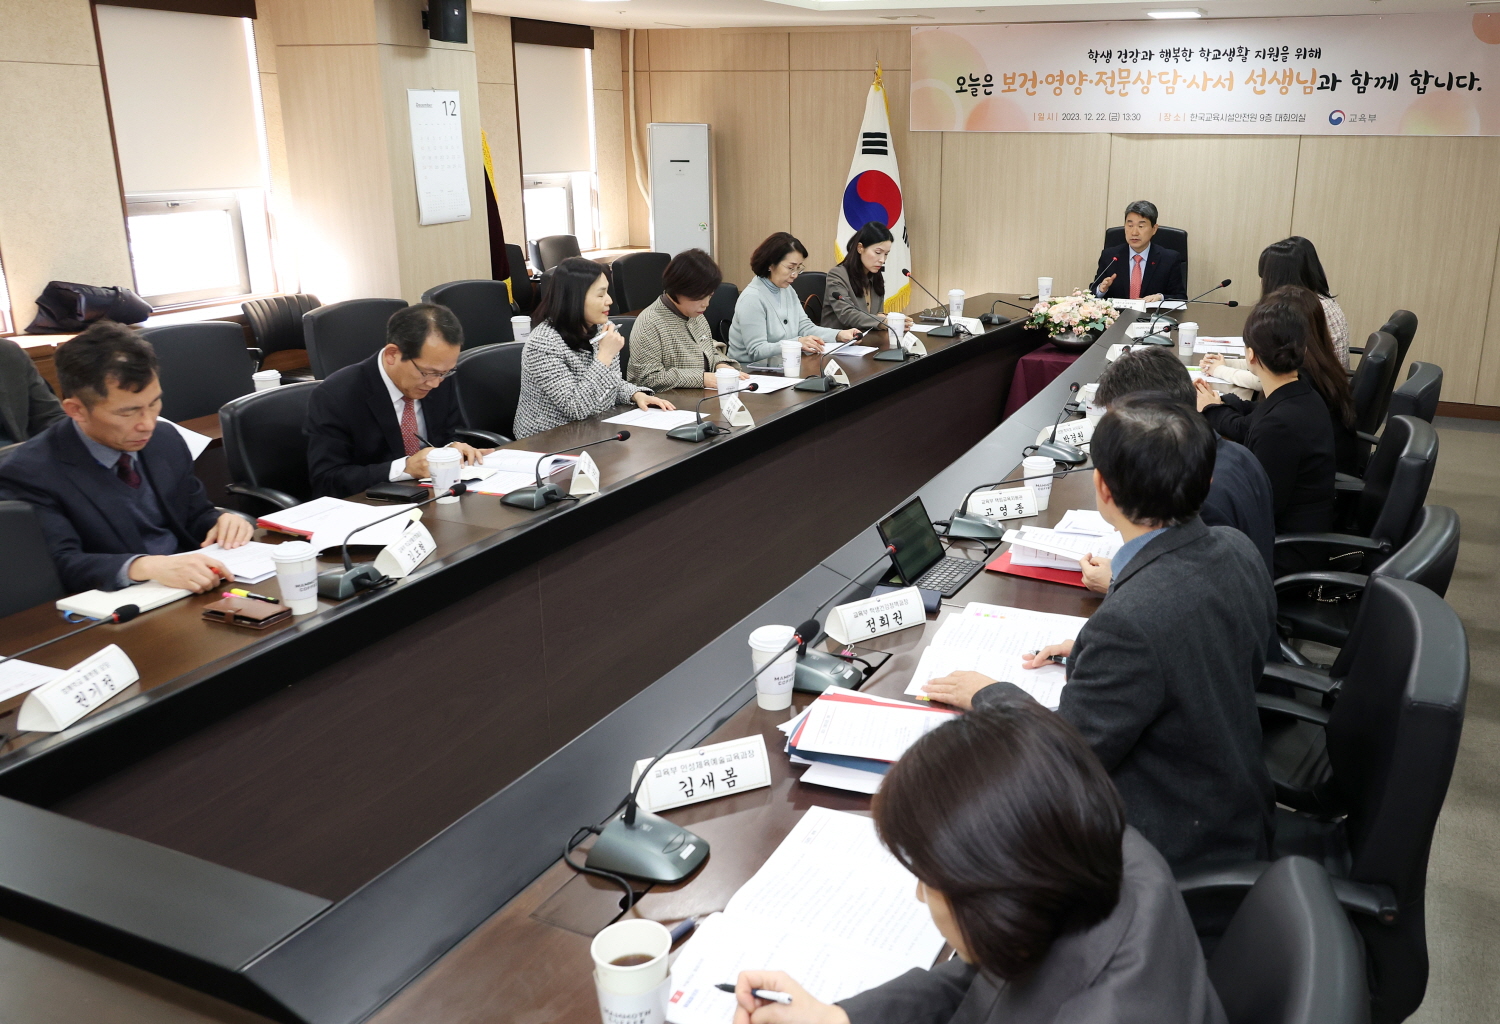 이주호 부총리 겸 교육부장관은 12월 22일(금), 한국교육시설안전원에서 함께학교 플랫폼과 연계한 제3차 「함께차담회」를 개최했다.